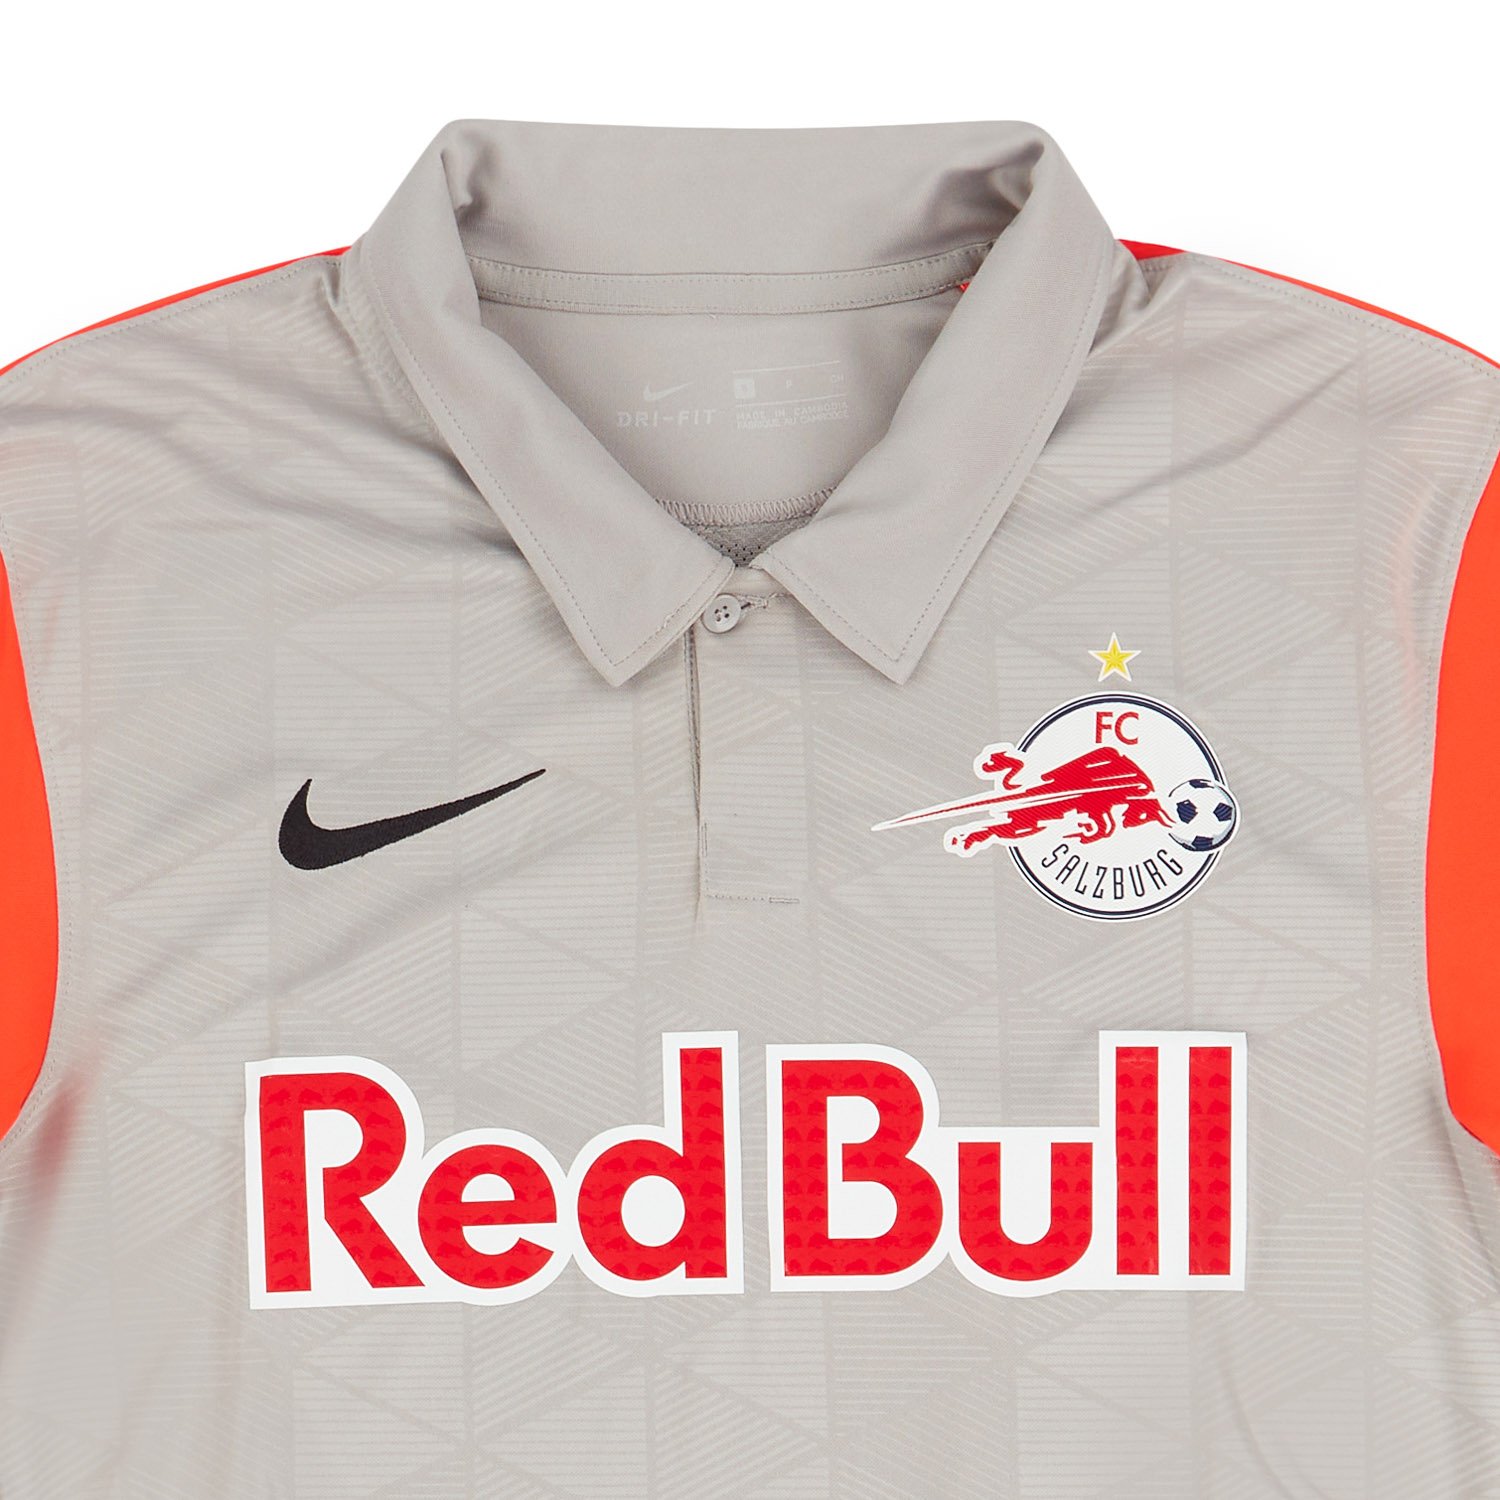 2020-21 Red Bull Salzburg Away Shirt Mwepu #45